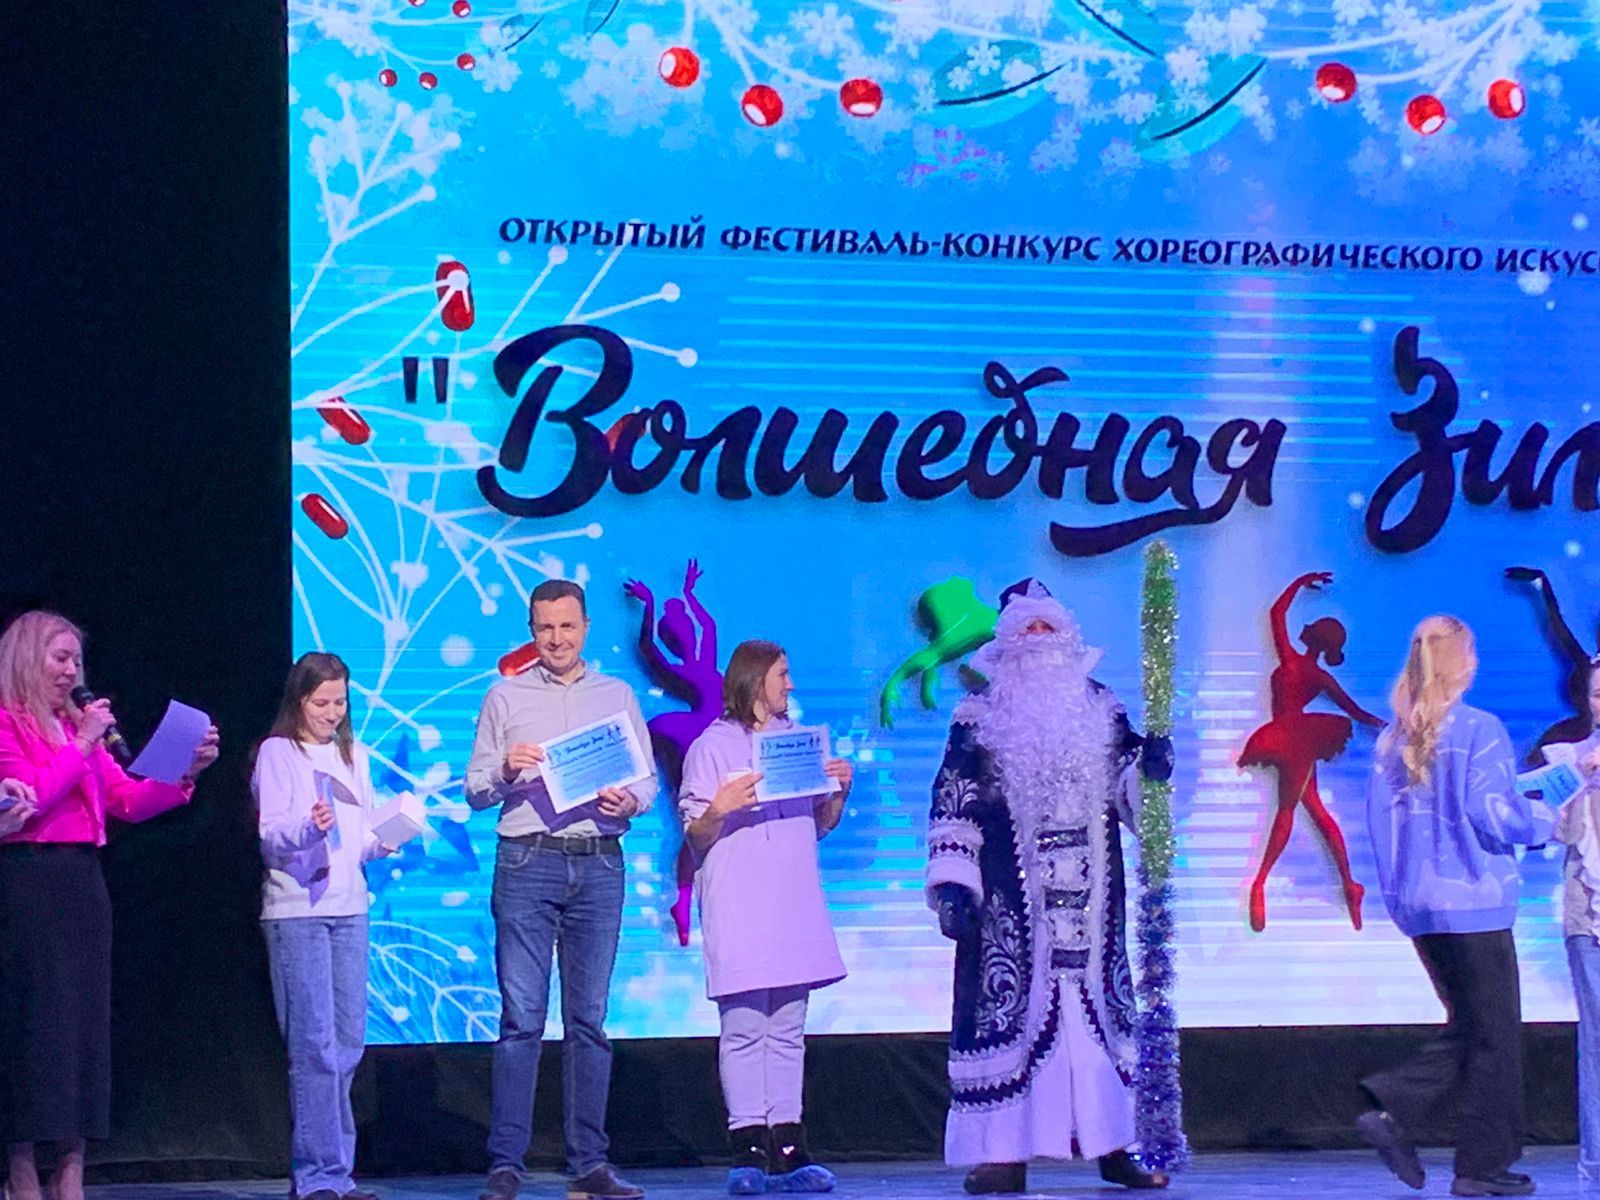 Высокогорские танцоры привезли победы в хореографическом конкурсе конкурсе